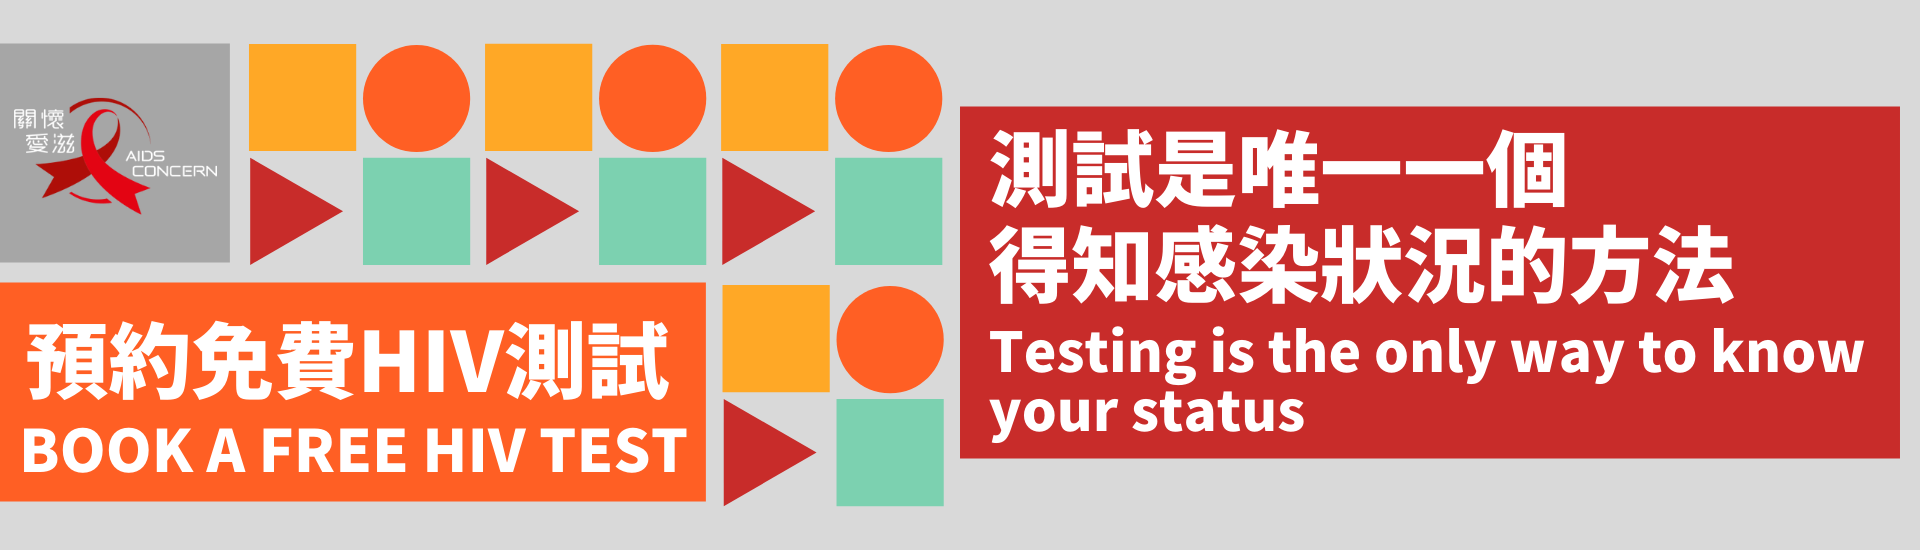 香港免費愛滋測試 HIV testing in Hong Kong for free